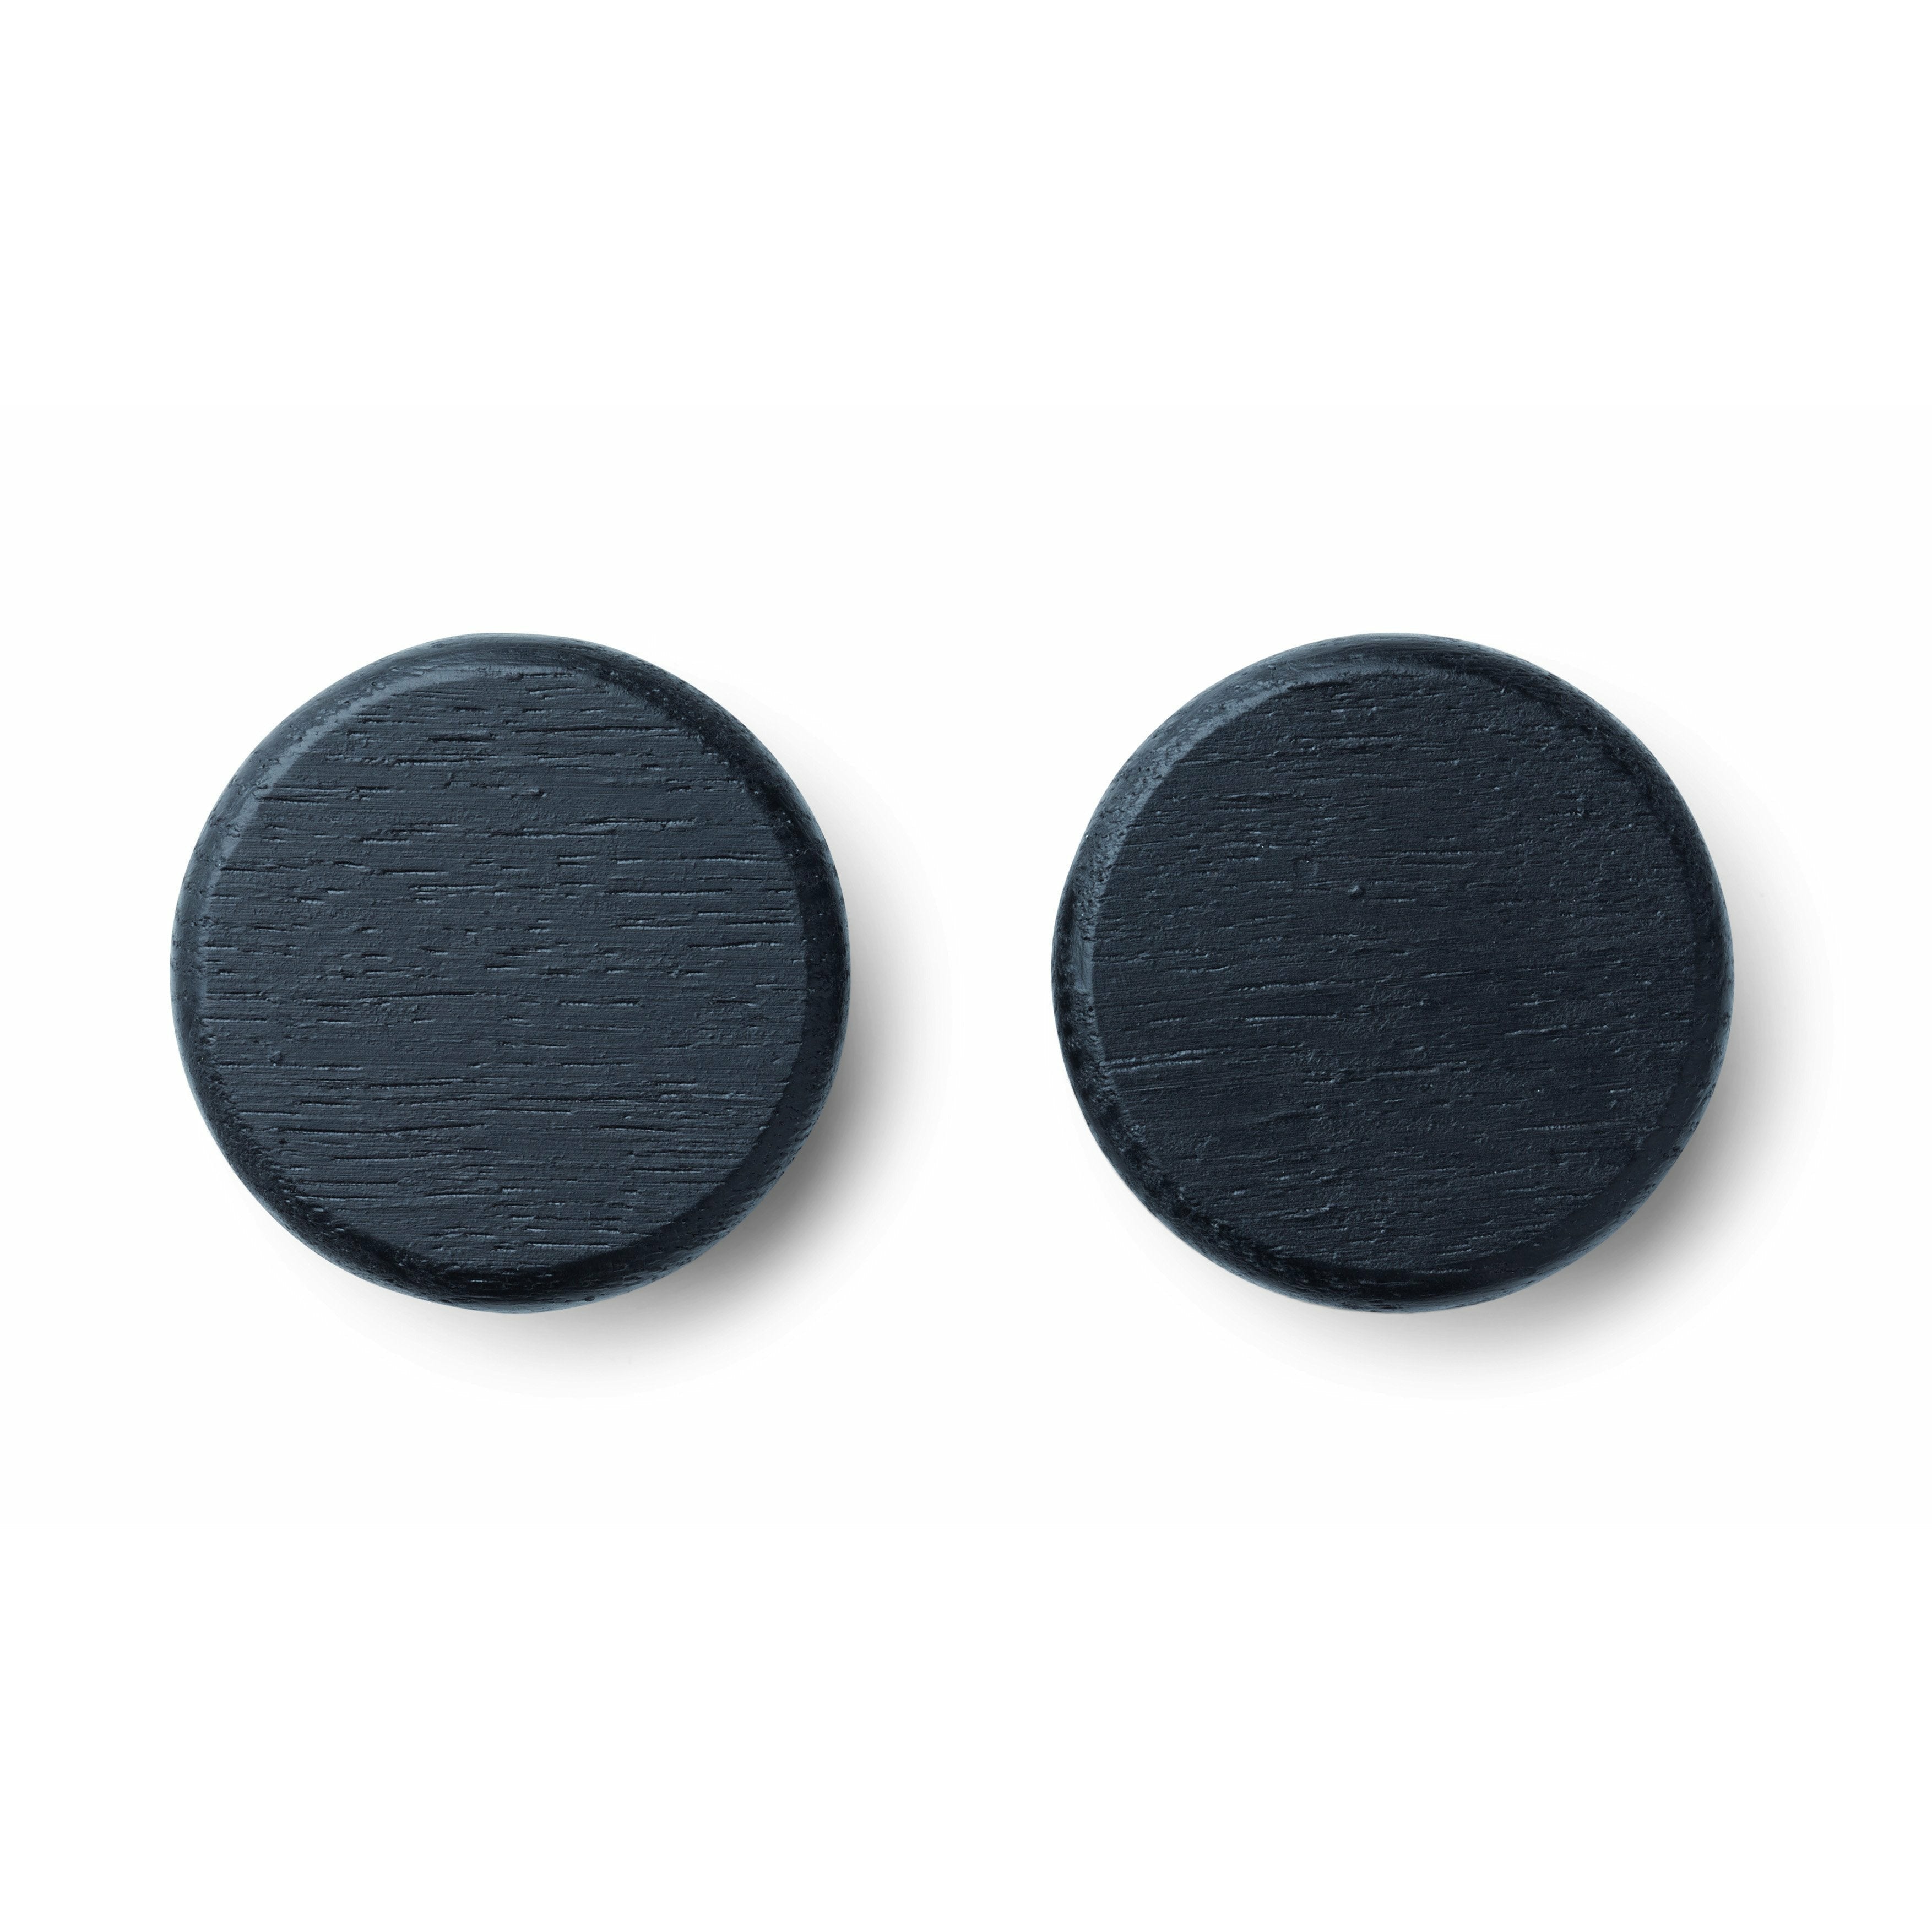 Botão do ímã do Flex Gejst preto, 4cm